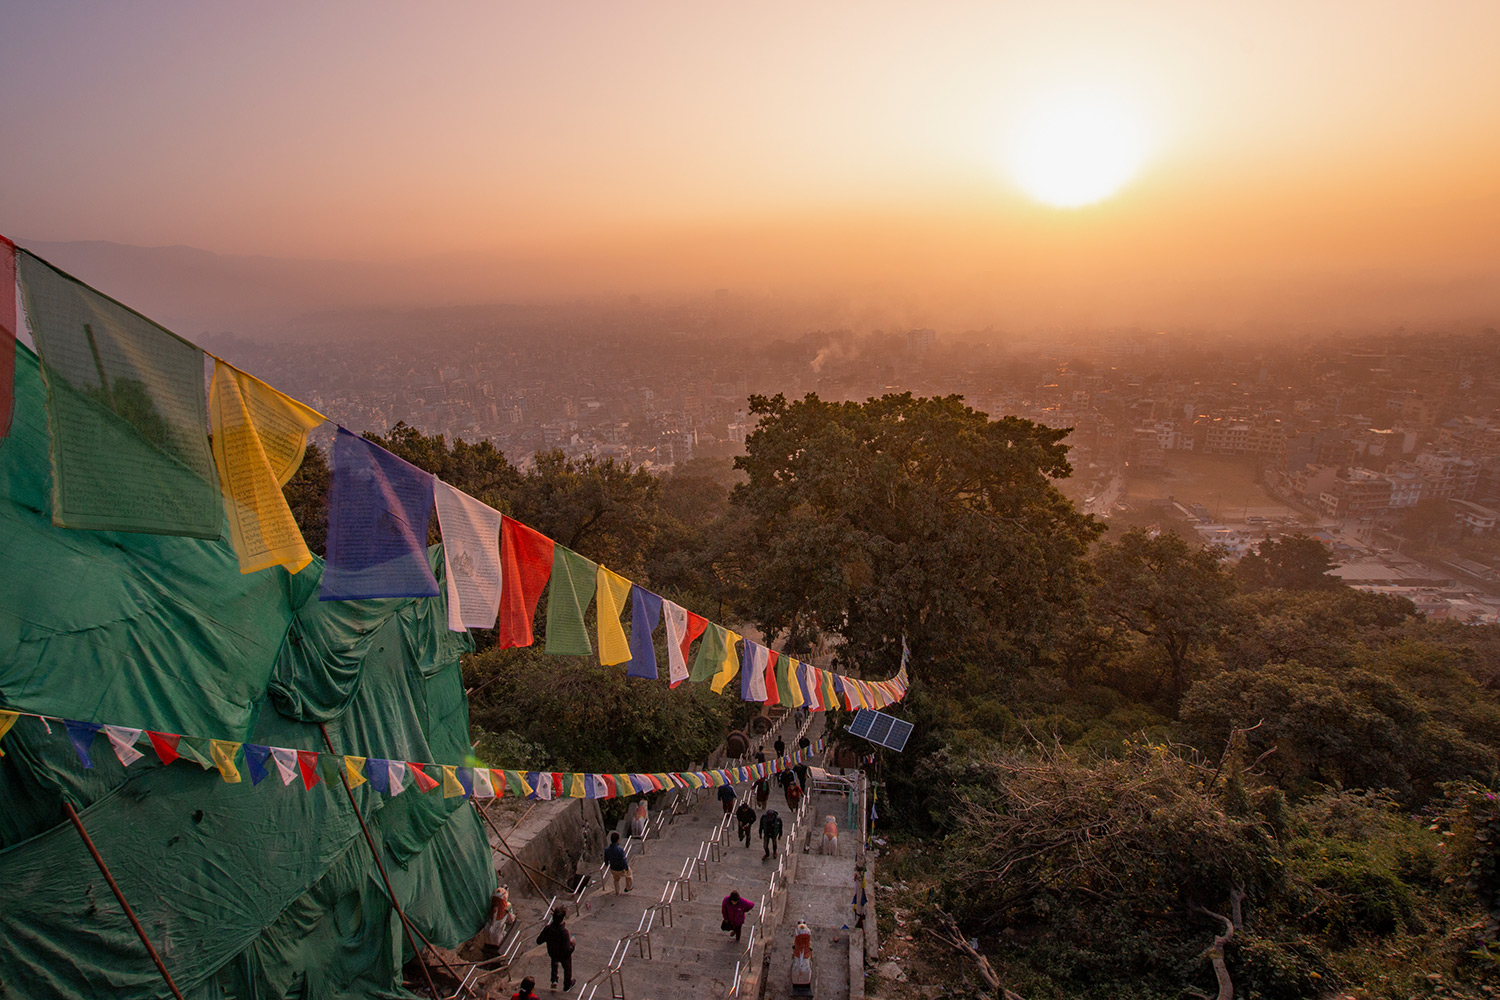 Lever de soleil, Katmandou, Népal / Sunrise, Katmandou, Nepal